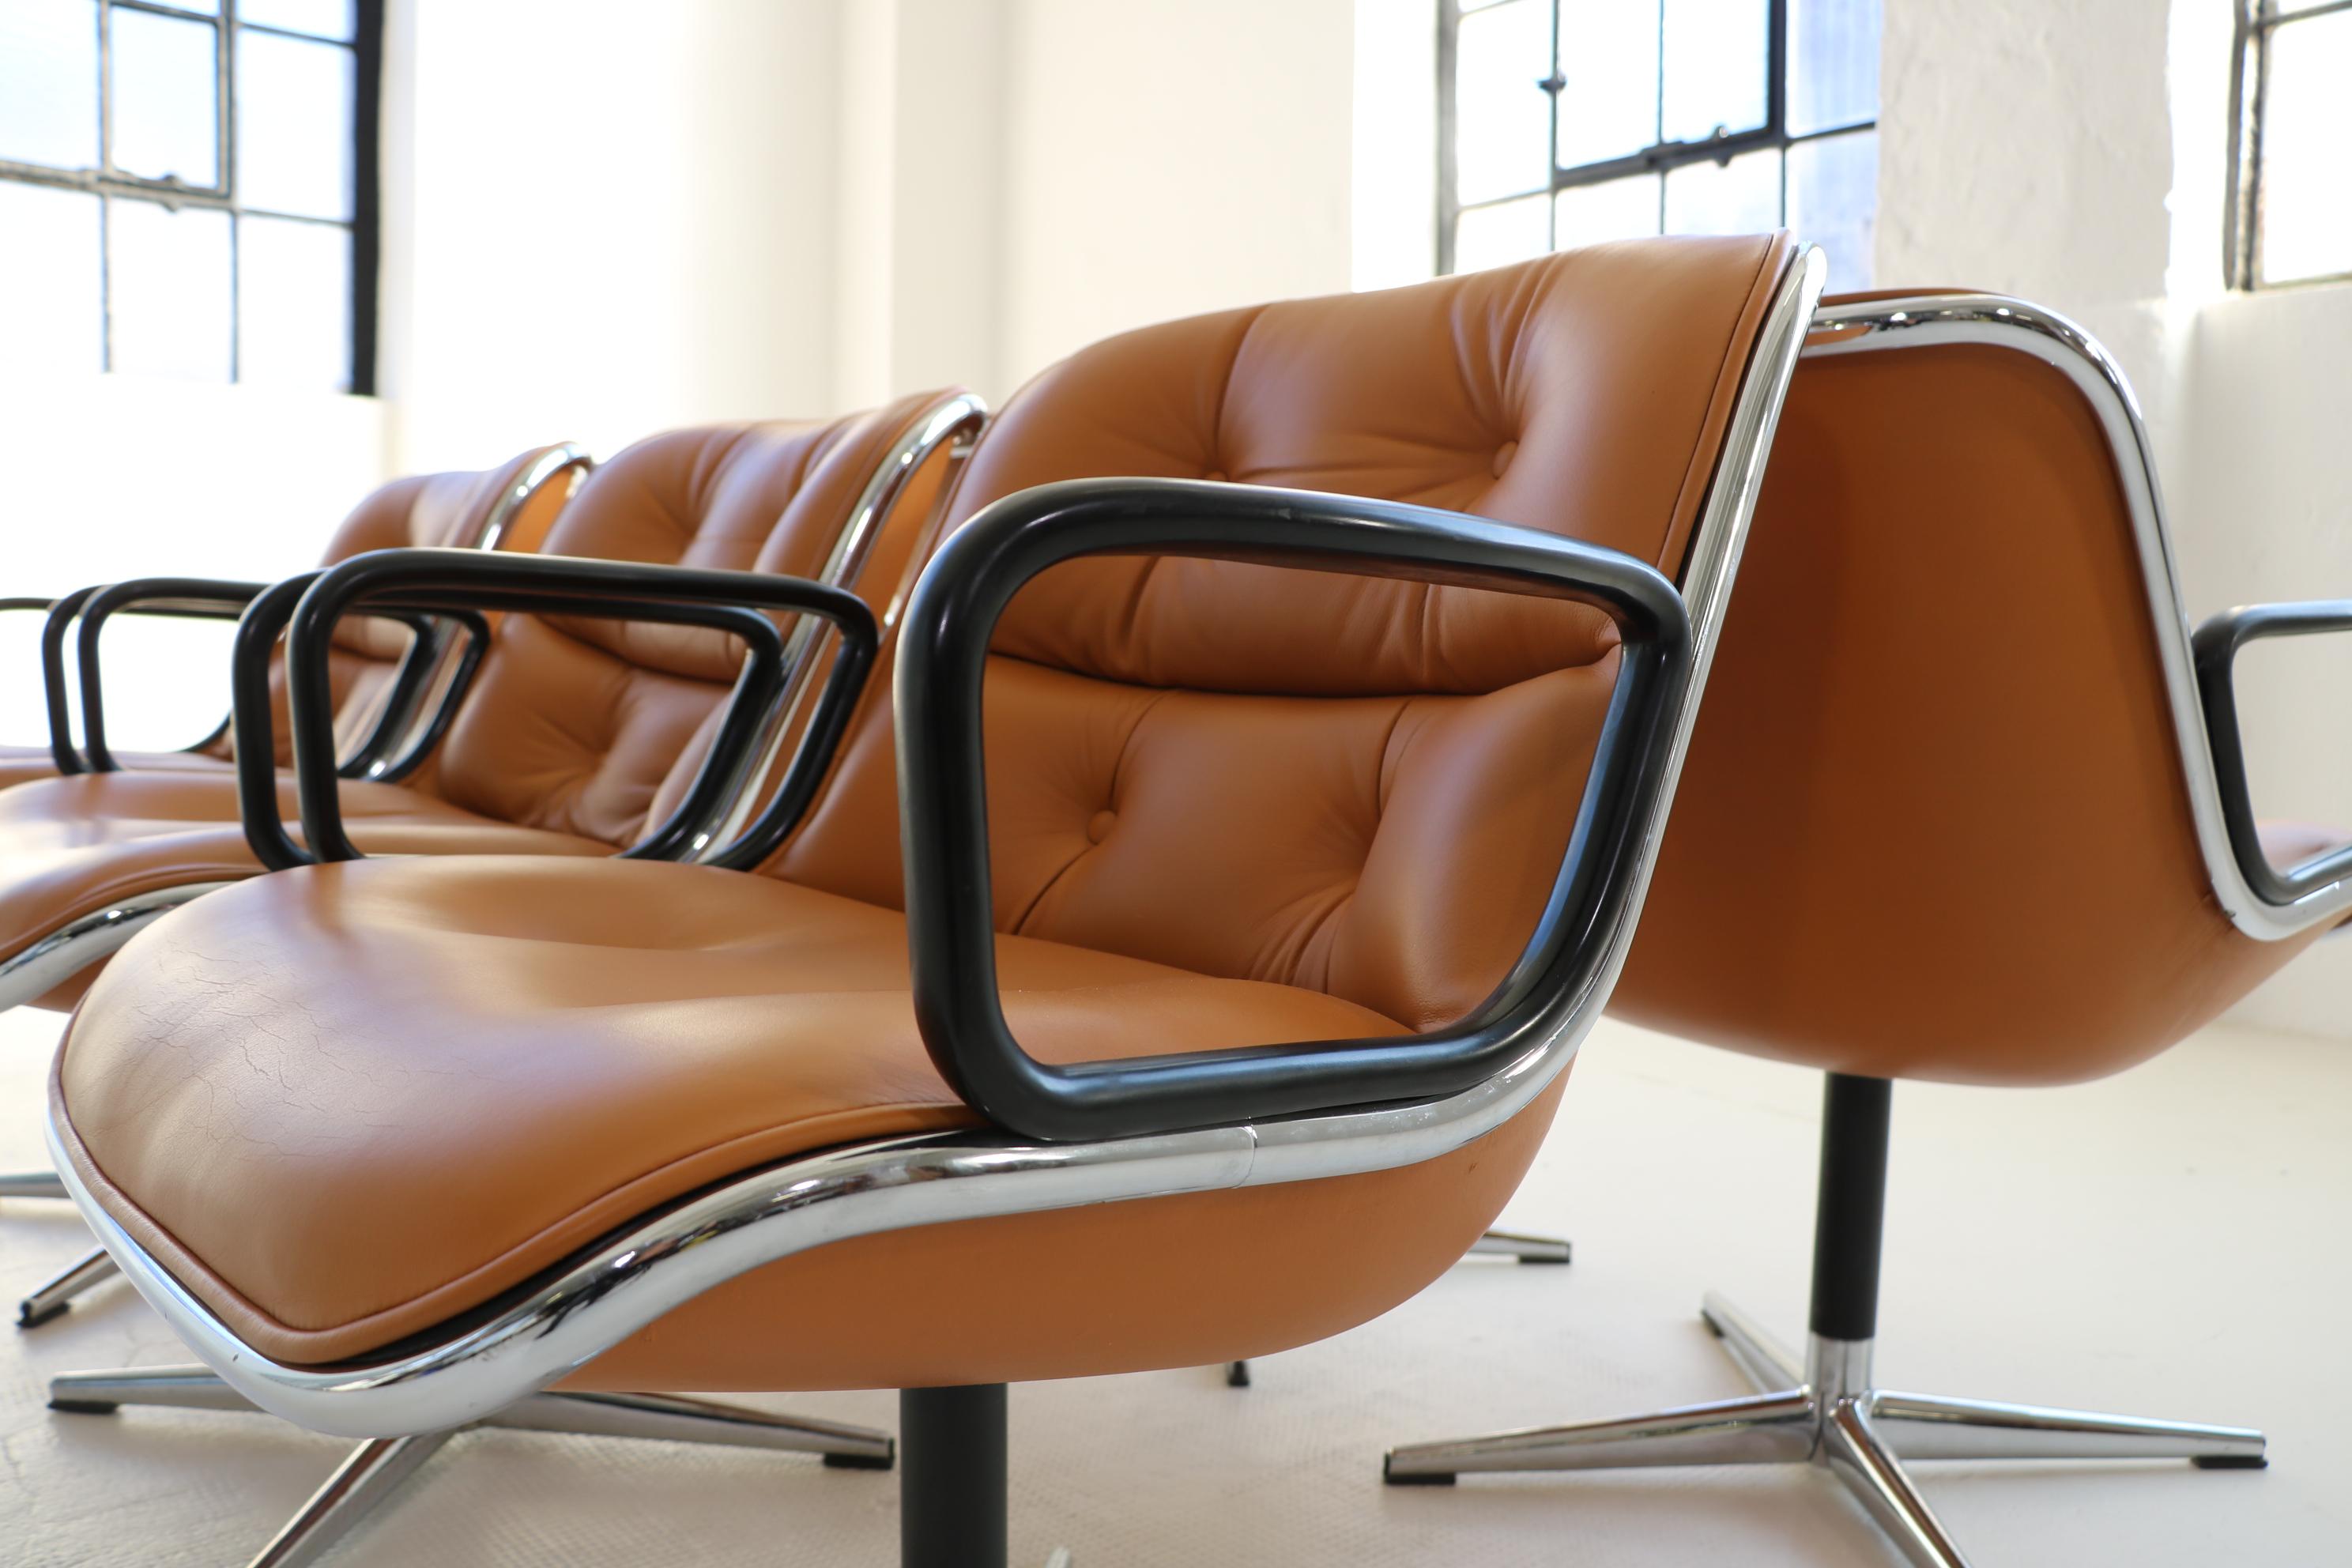 Un ensemble de six chaises Charles Pollock en excellent état vintage. 
Ce fauteuil a été conçu par le designer américain Charles Pollock pour le fabricant Knoll International.
Les caractéristiques particulières de ces fauteuils sont le dossier